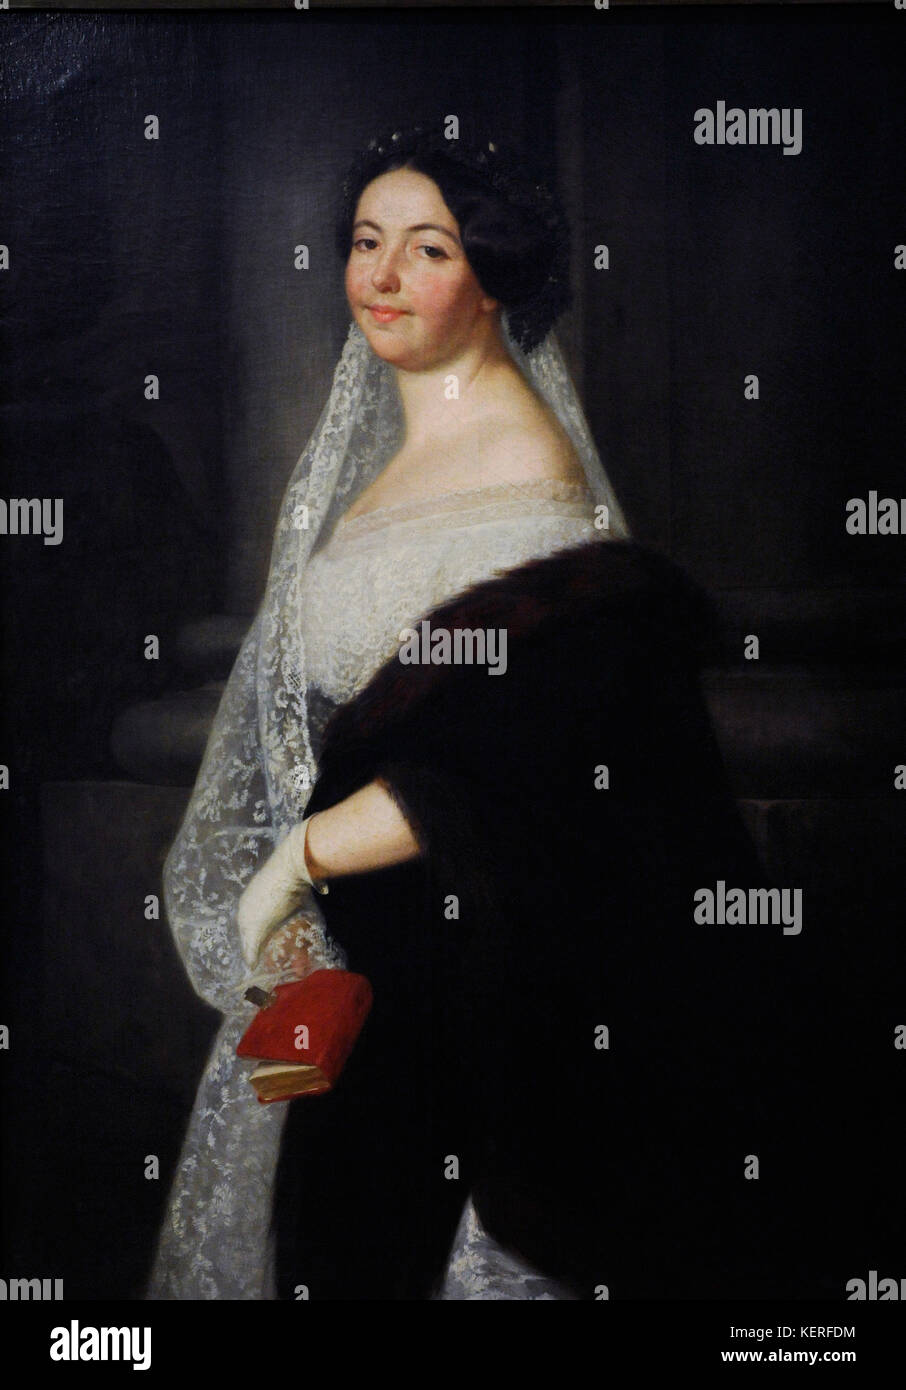 Henryk rodakowski (1823-1894) peintre polonais.. portrait de l'artiste, la soeur de Wanda, avec sa robe de mariage, 1858. musée de Silésie. Katowice. Pologne. Banque D'Images